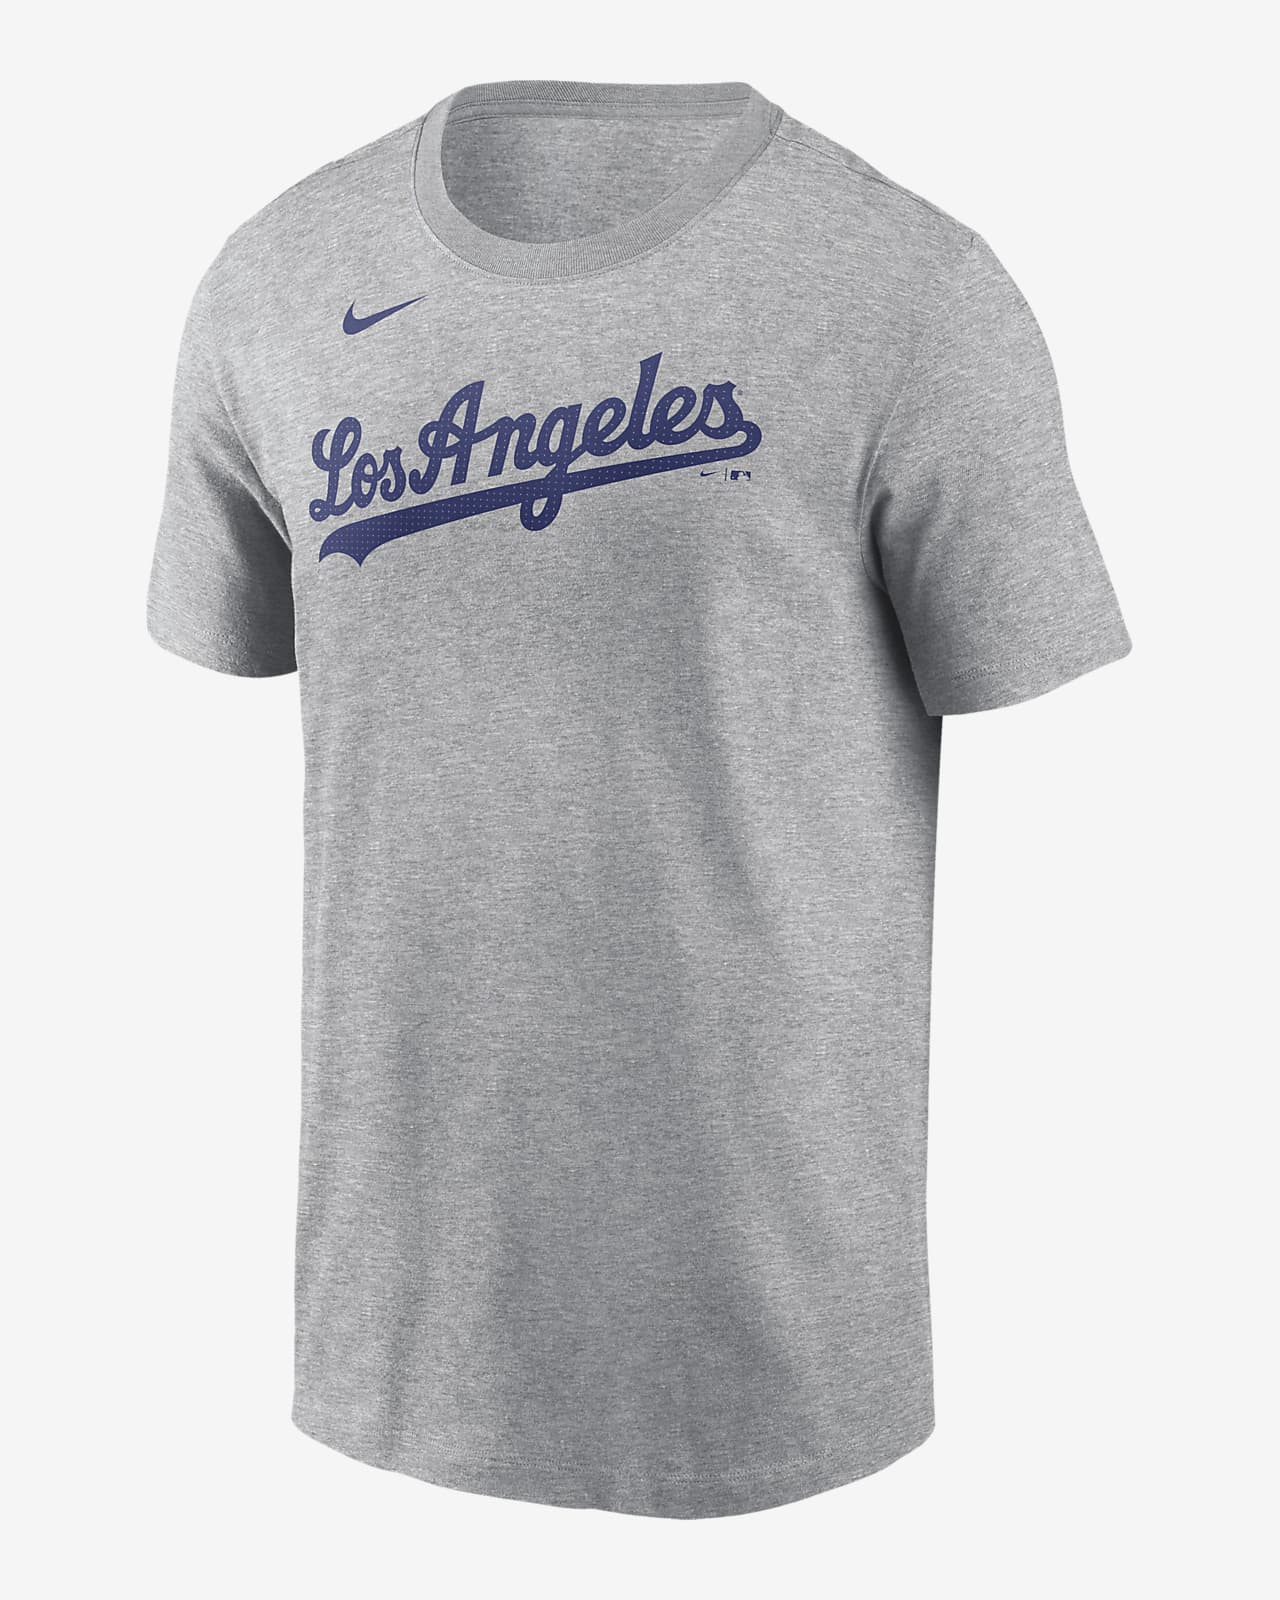 Shohei Ohtani Los Angeles Dodgers Fuse Men's Nike MLB T-Shirt